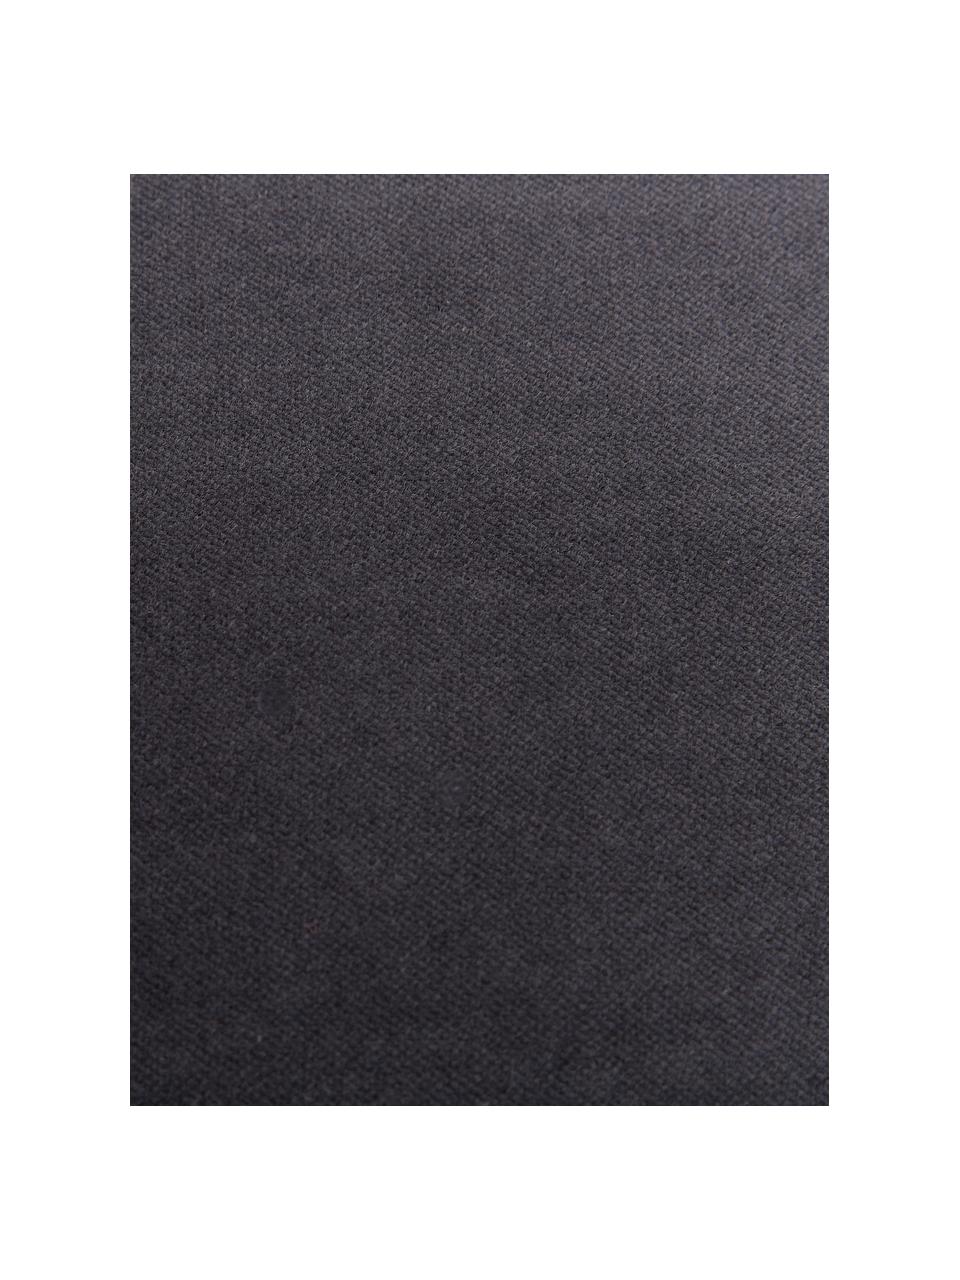 Einfarbige Samt-Kissenhülle Dana in Anthrazit, 100% Baumwollsamt, Anthrazit, B 40 x L 40 cm